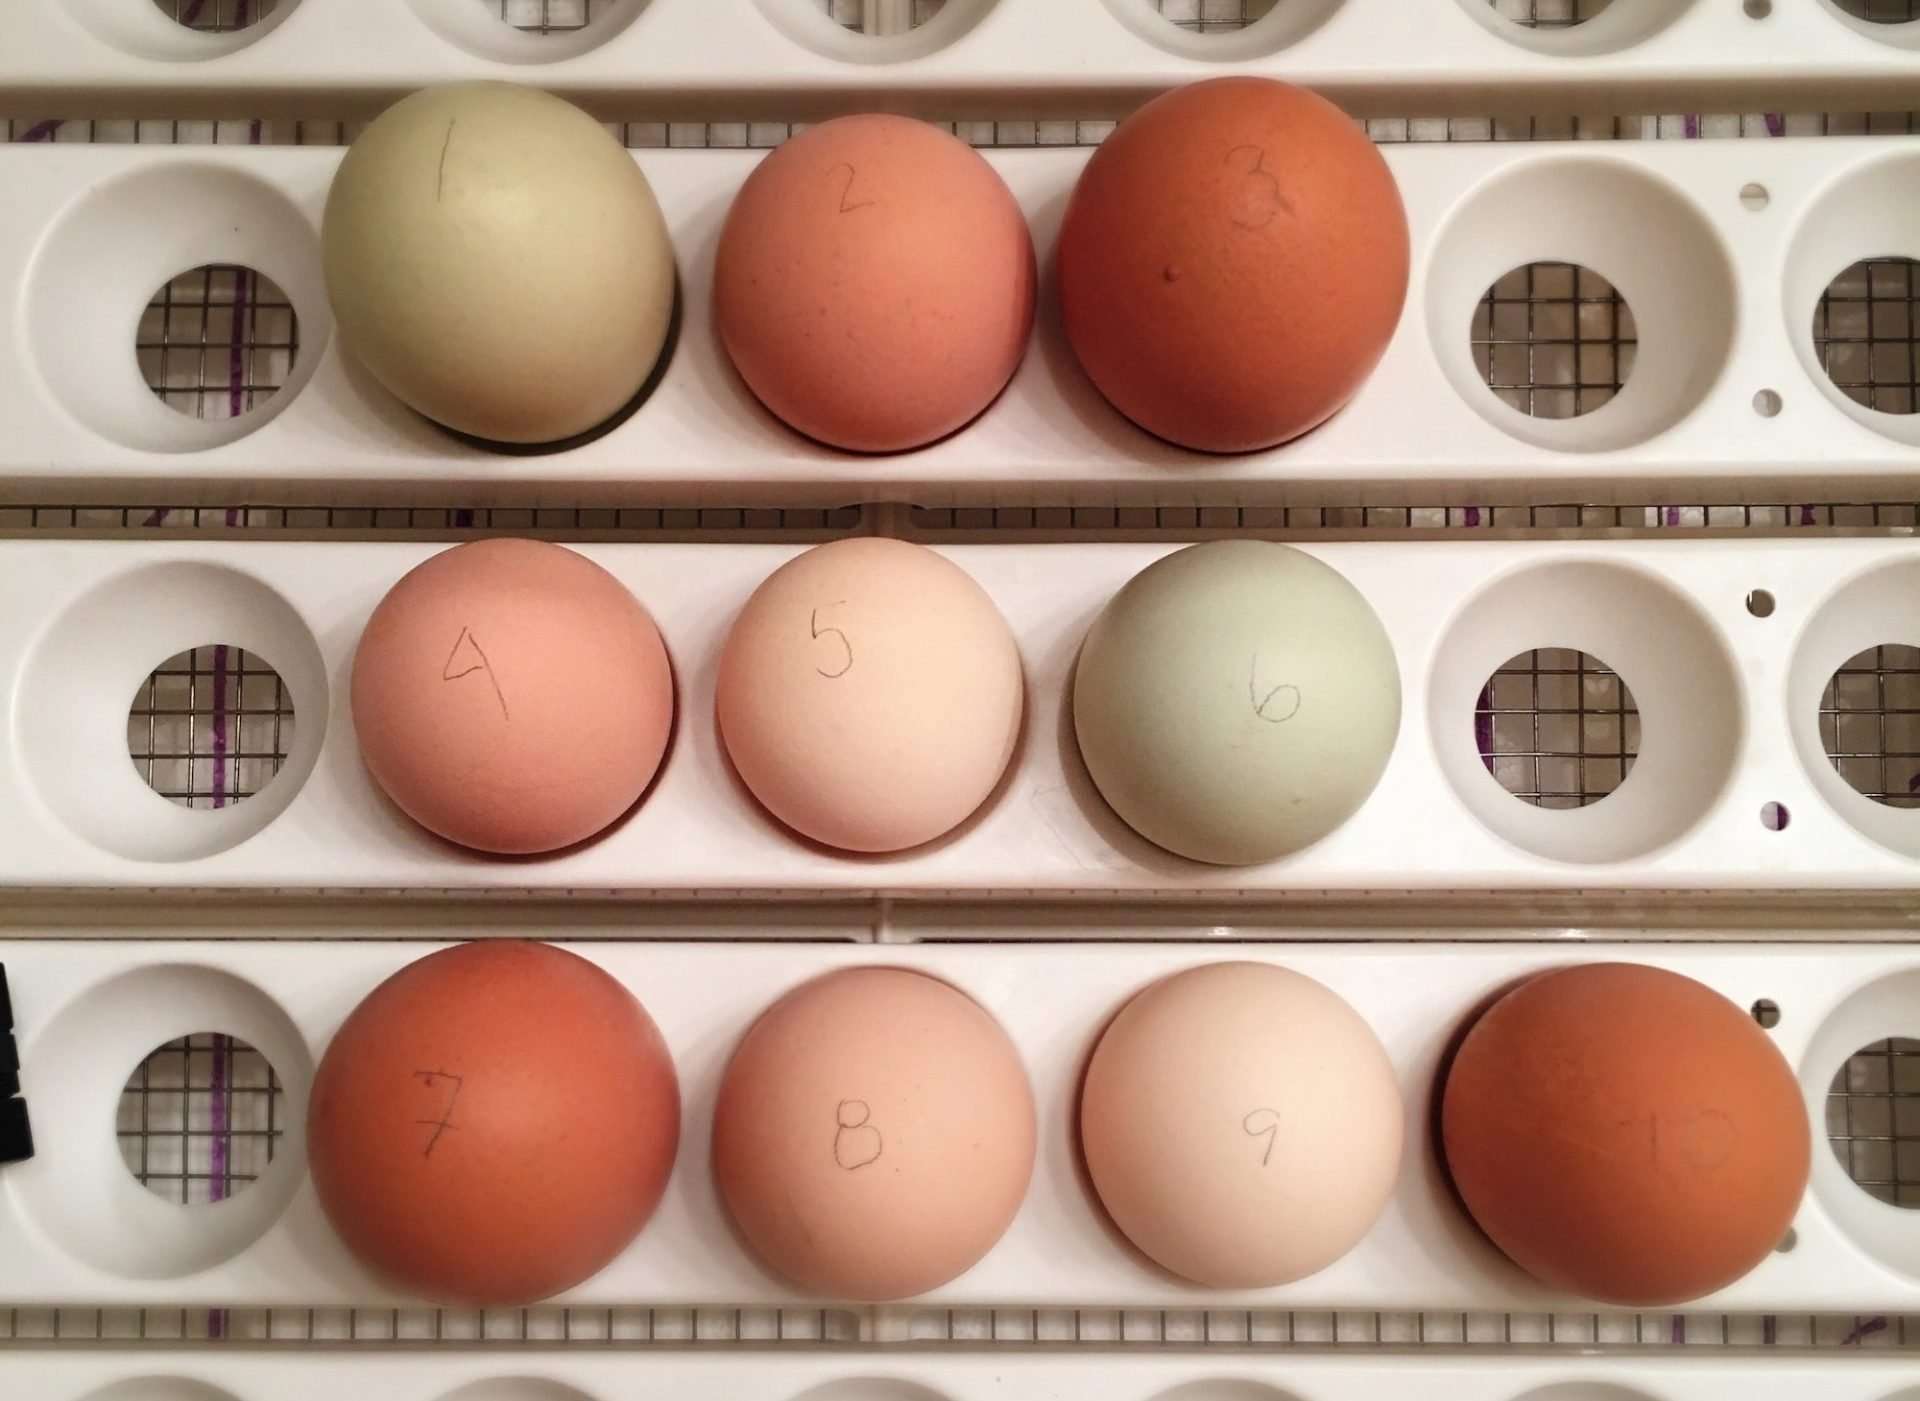 10 eggs in an incubator